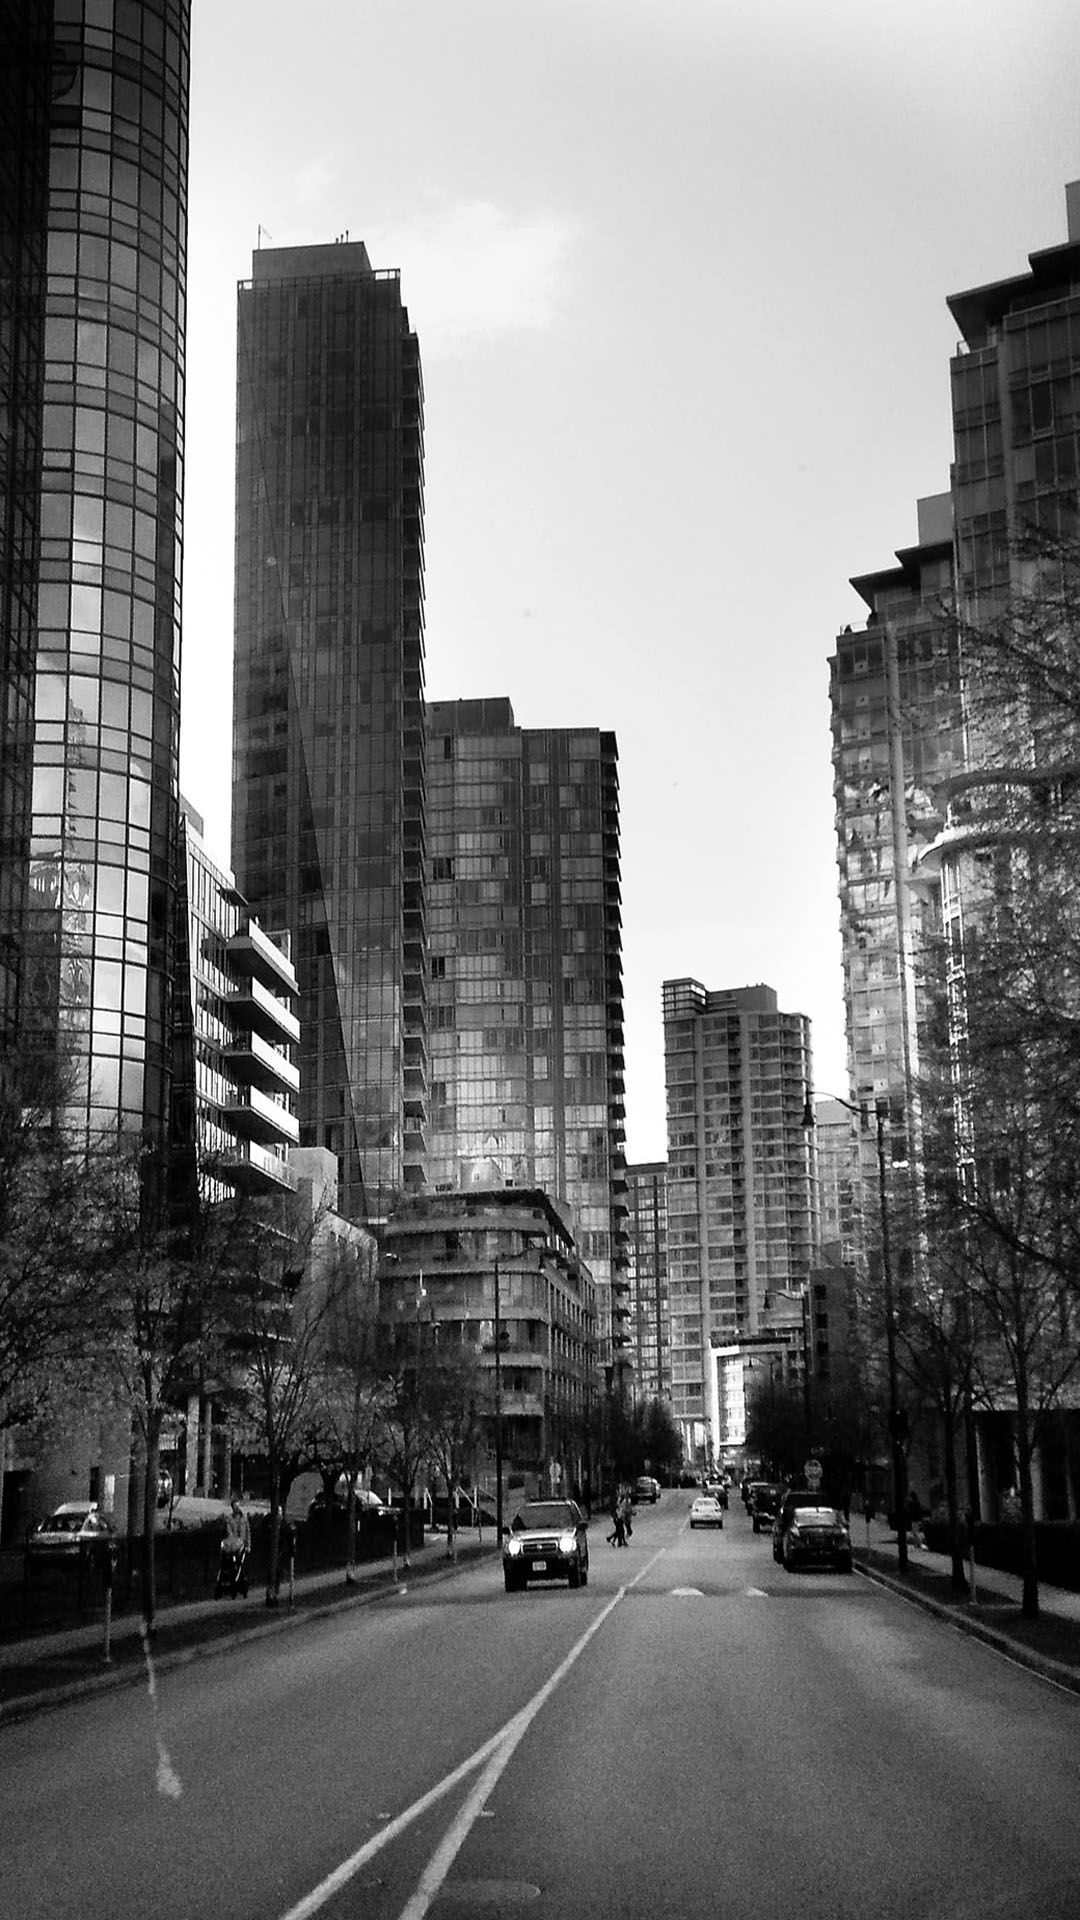 والپيپر سیاه و سفید موبایل با طرح خیابان زیبا در شهر 8k